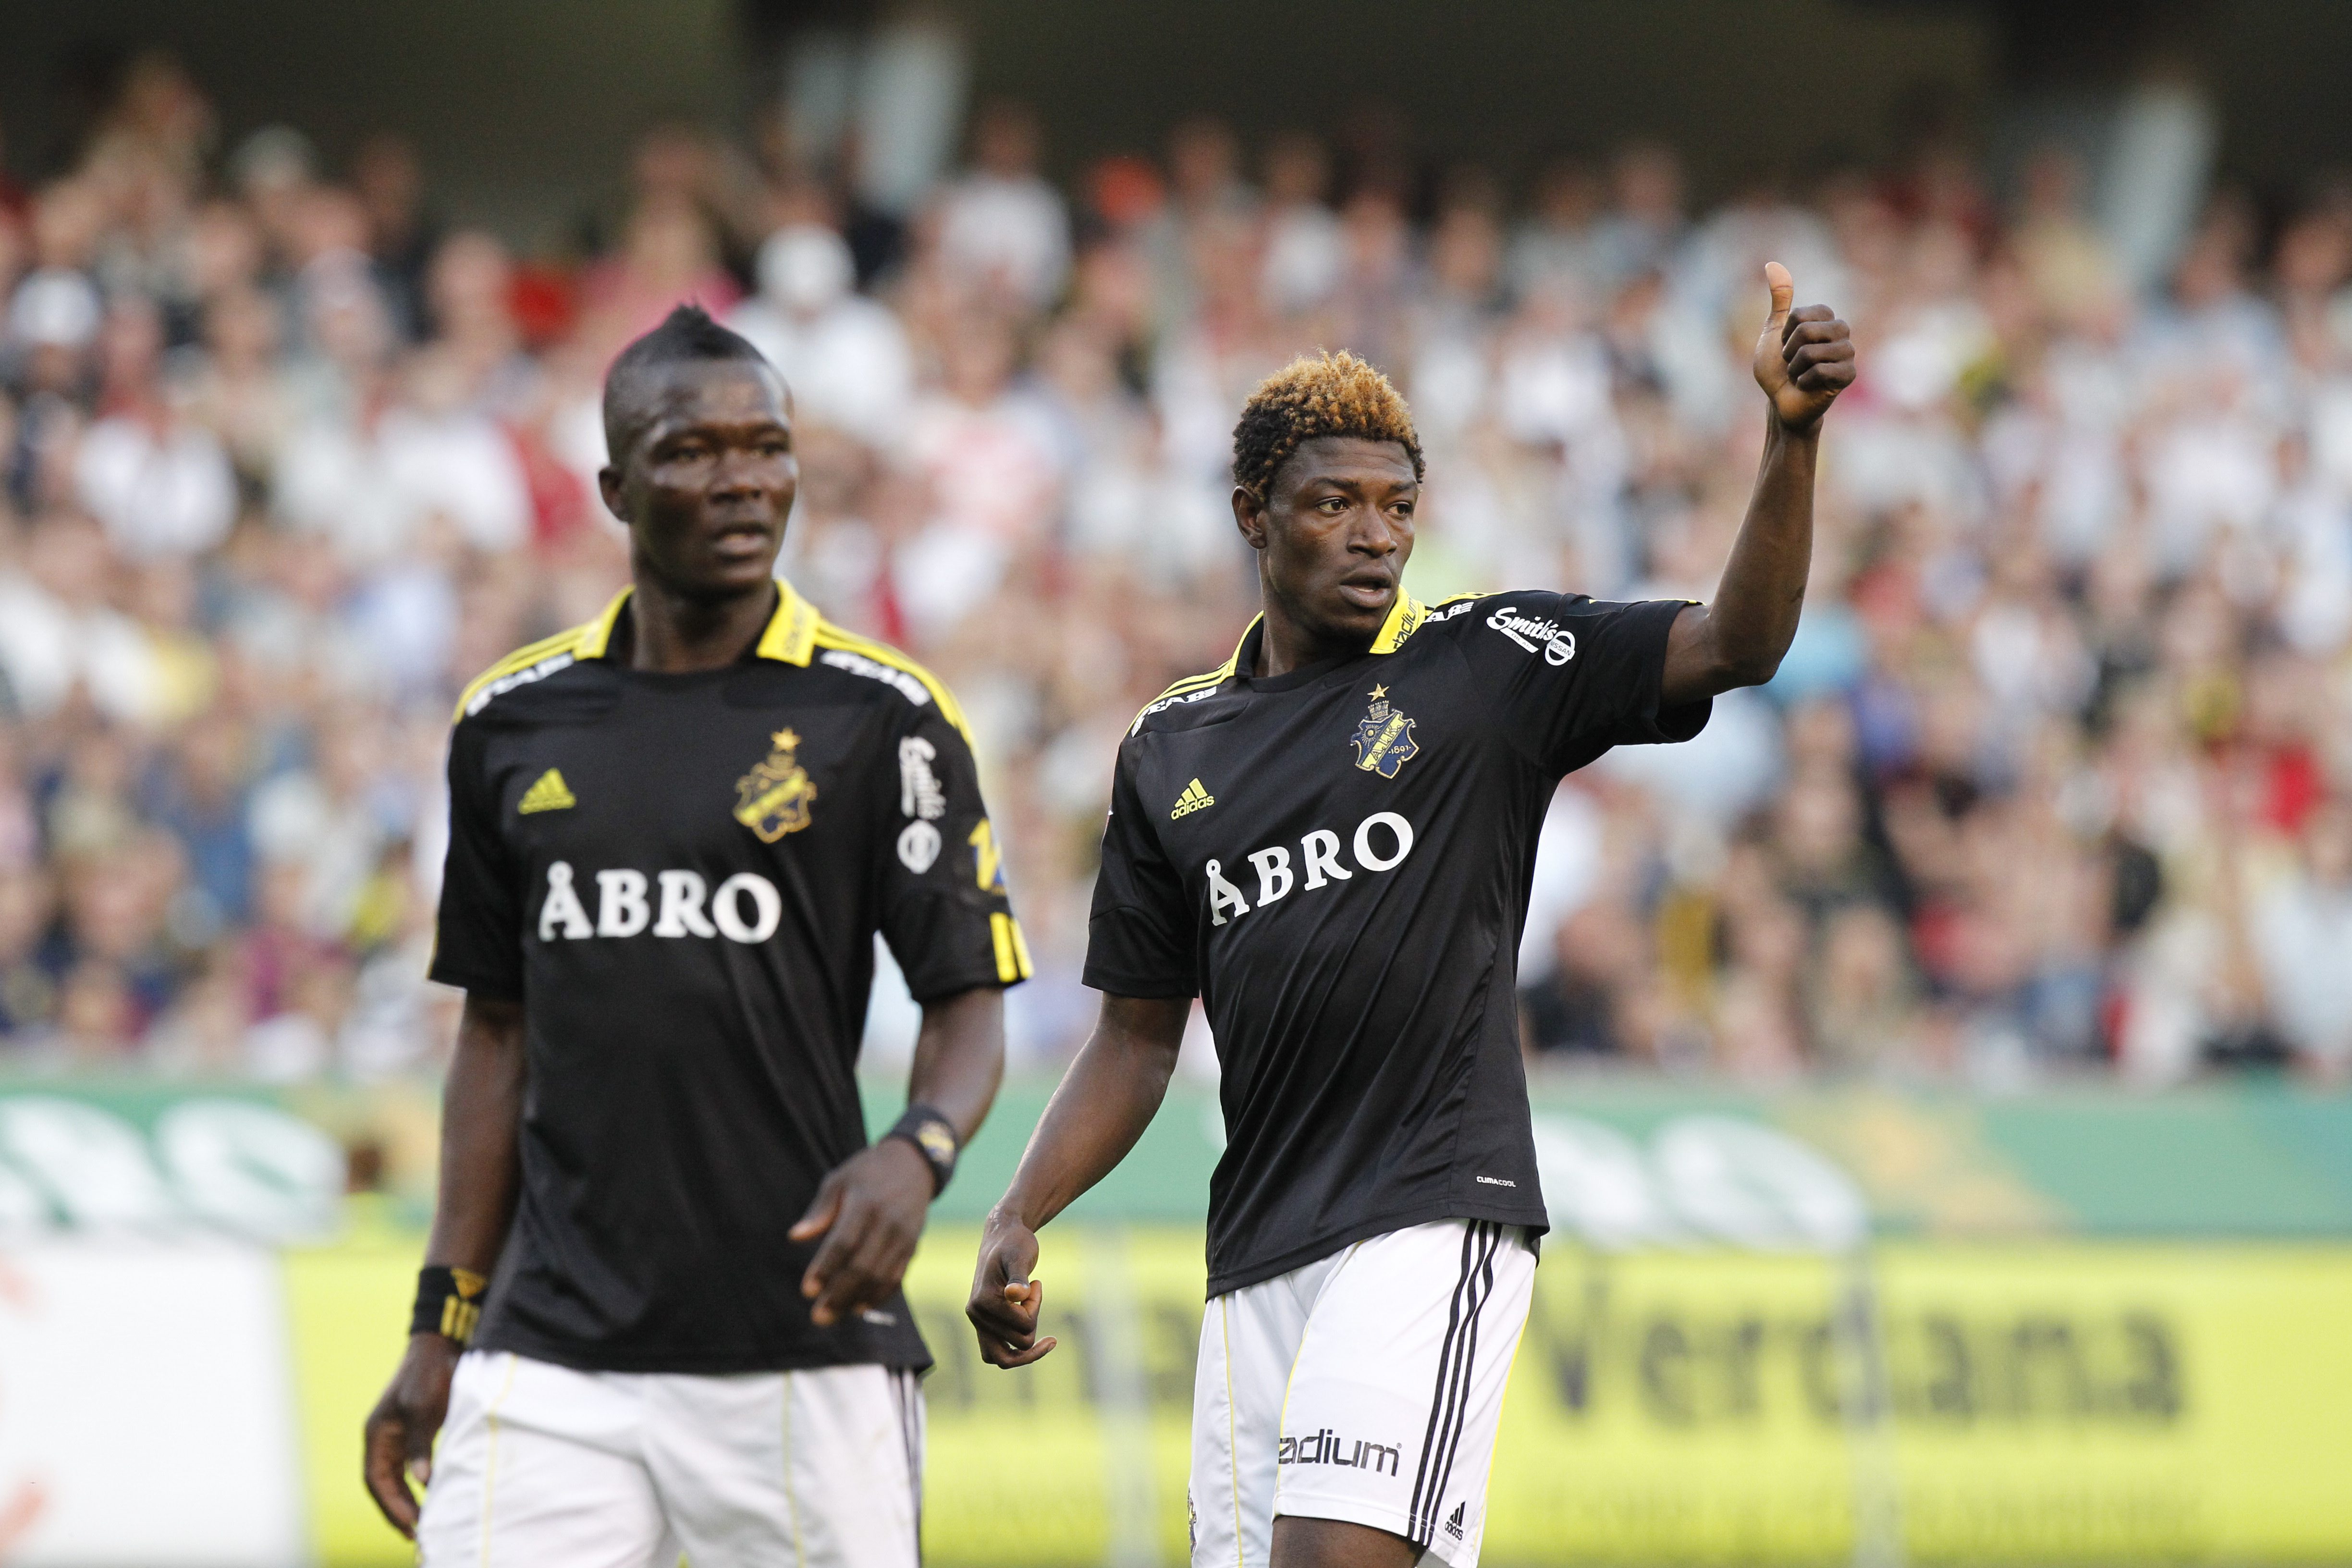 "The Banguras" har fått de flesta av rubrikerna i AIK den här säsongen.